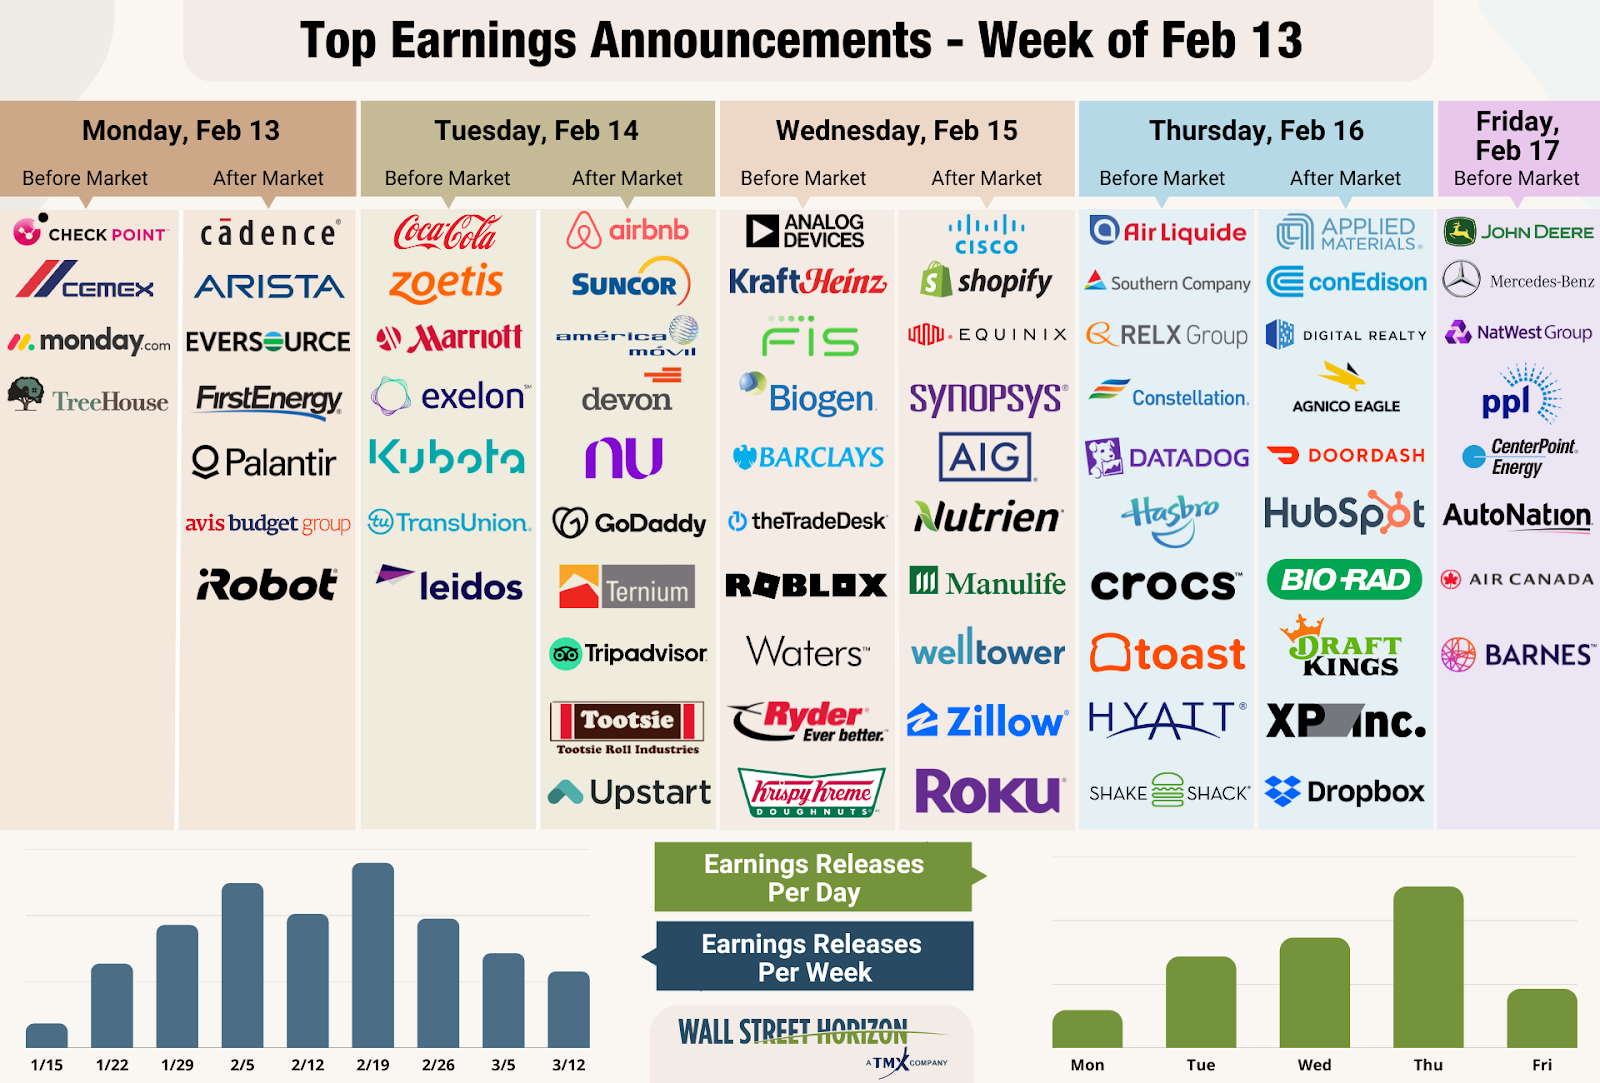 Top Earnings Announcements - Week Feb. 13